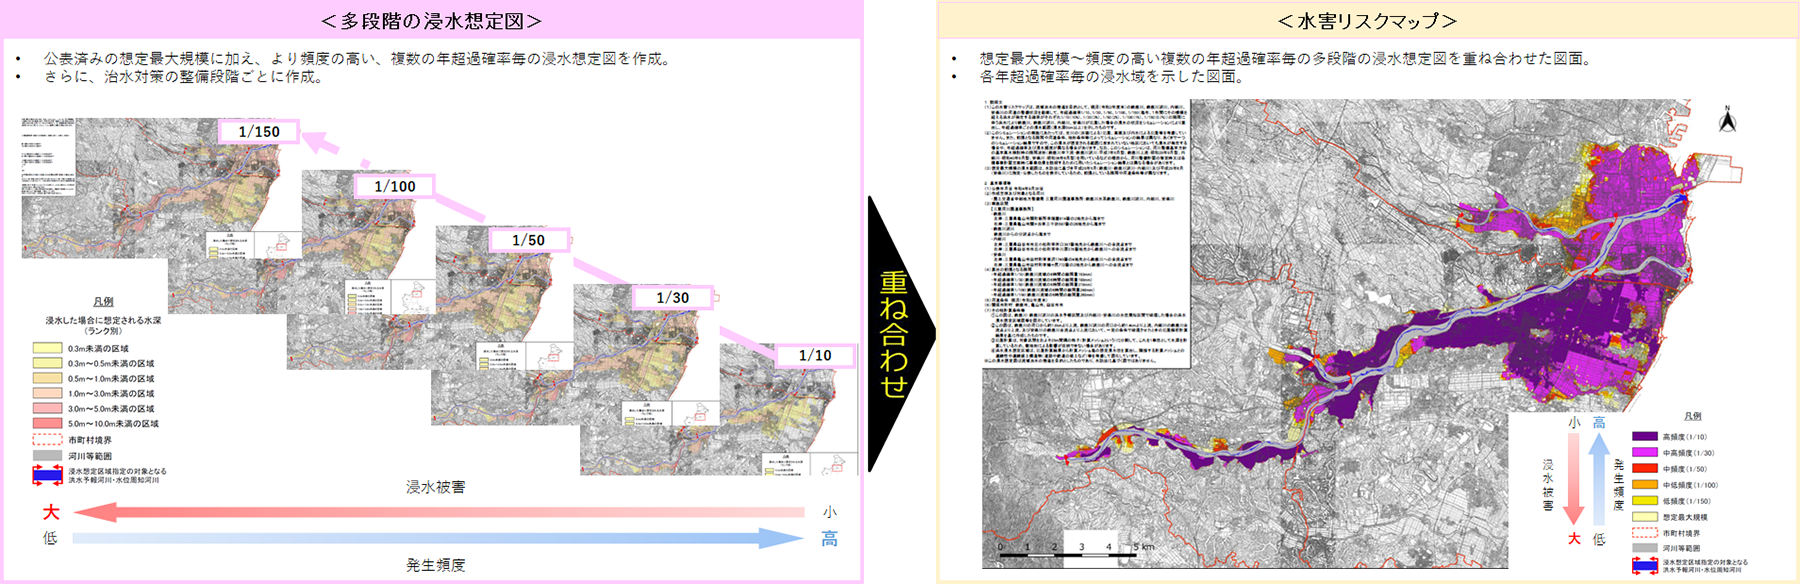 多段階の浸水想定図と水害リスクマップ